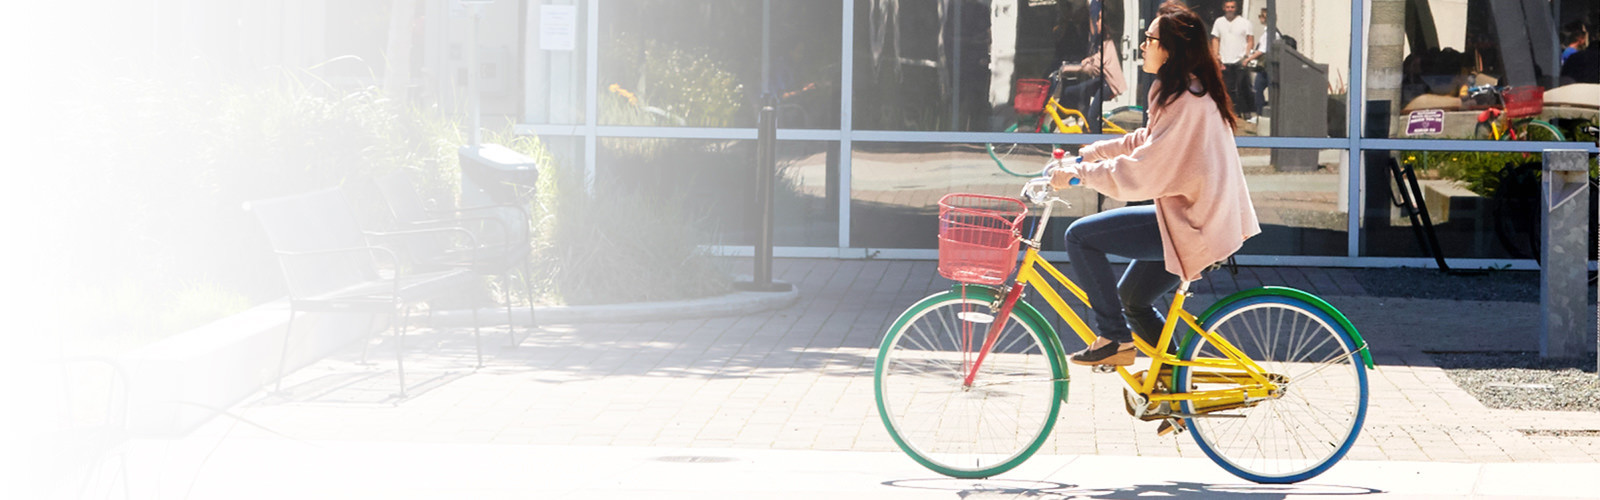 Frau mit dem Fahrrad auf einer Stadtstraße